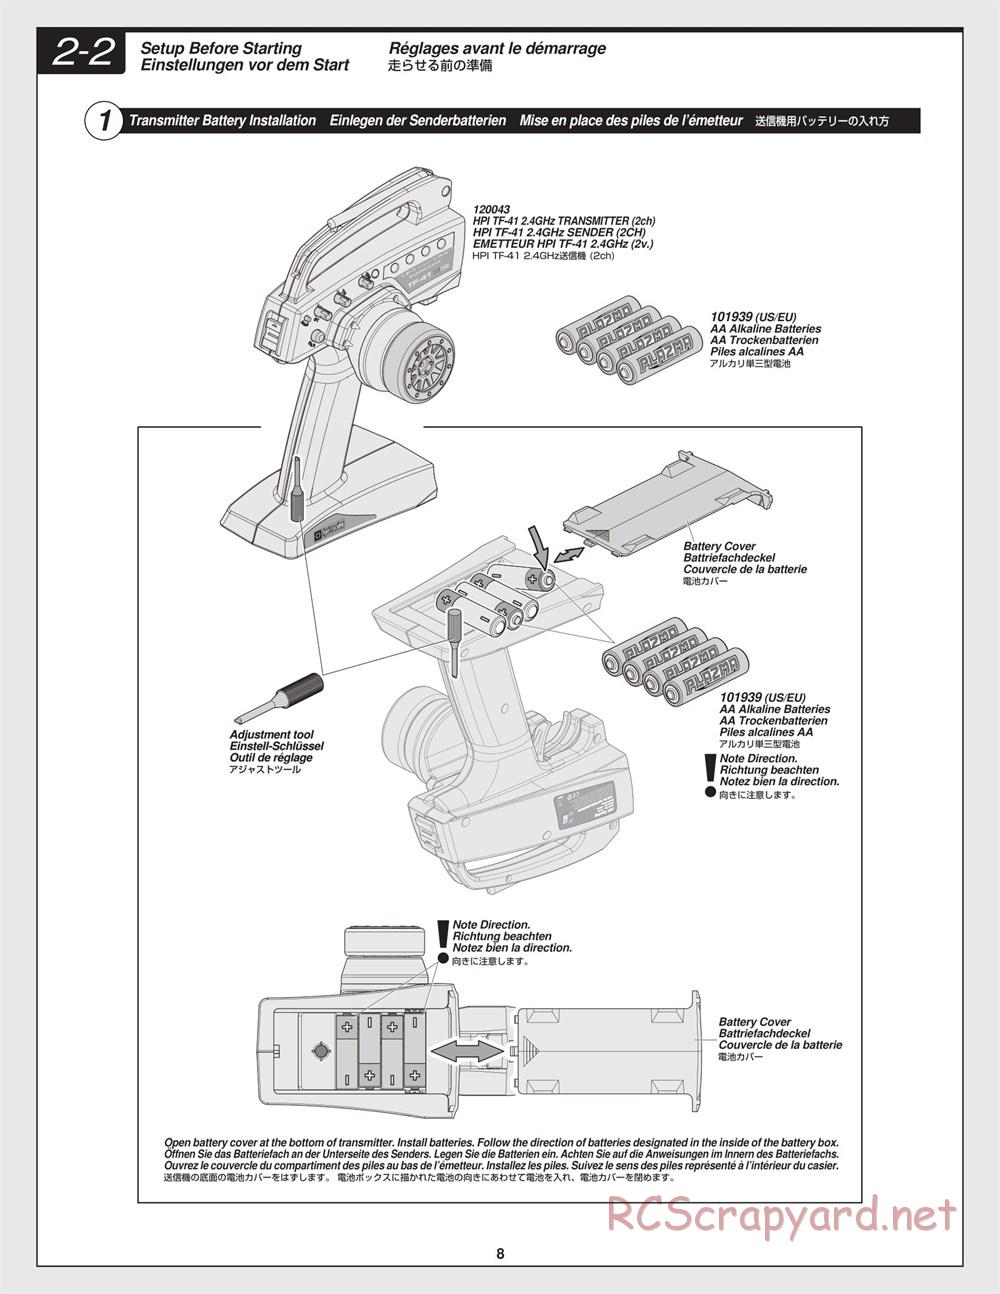 HPI - Crawler King - Manual - Page 8